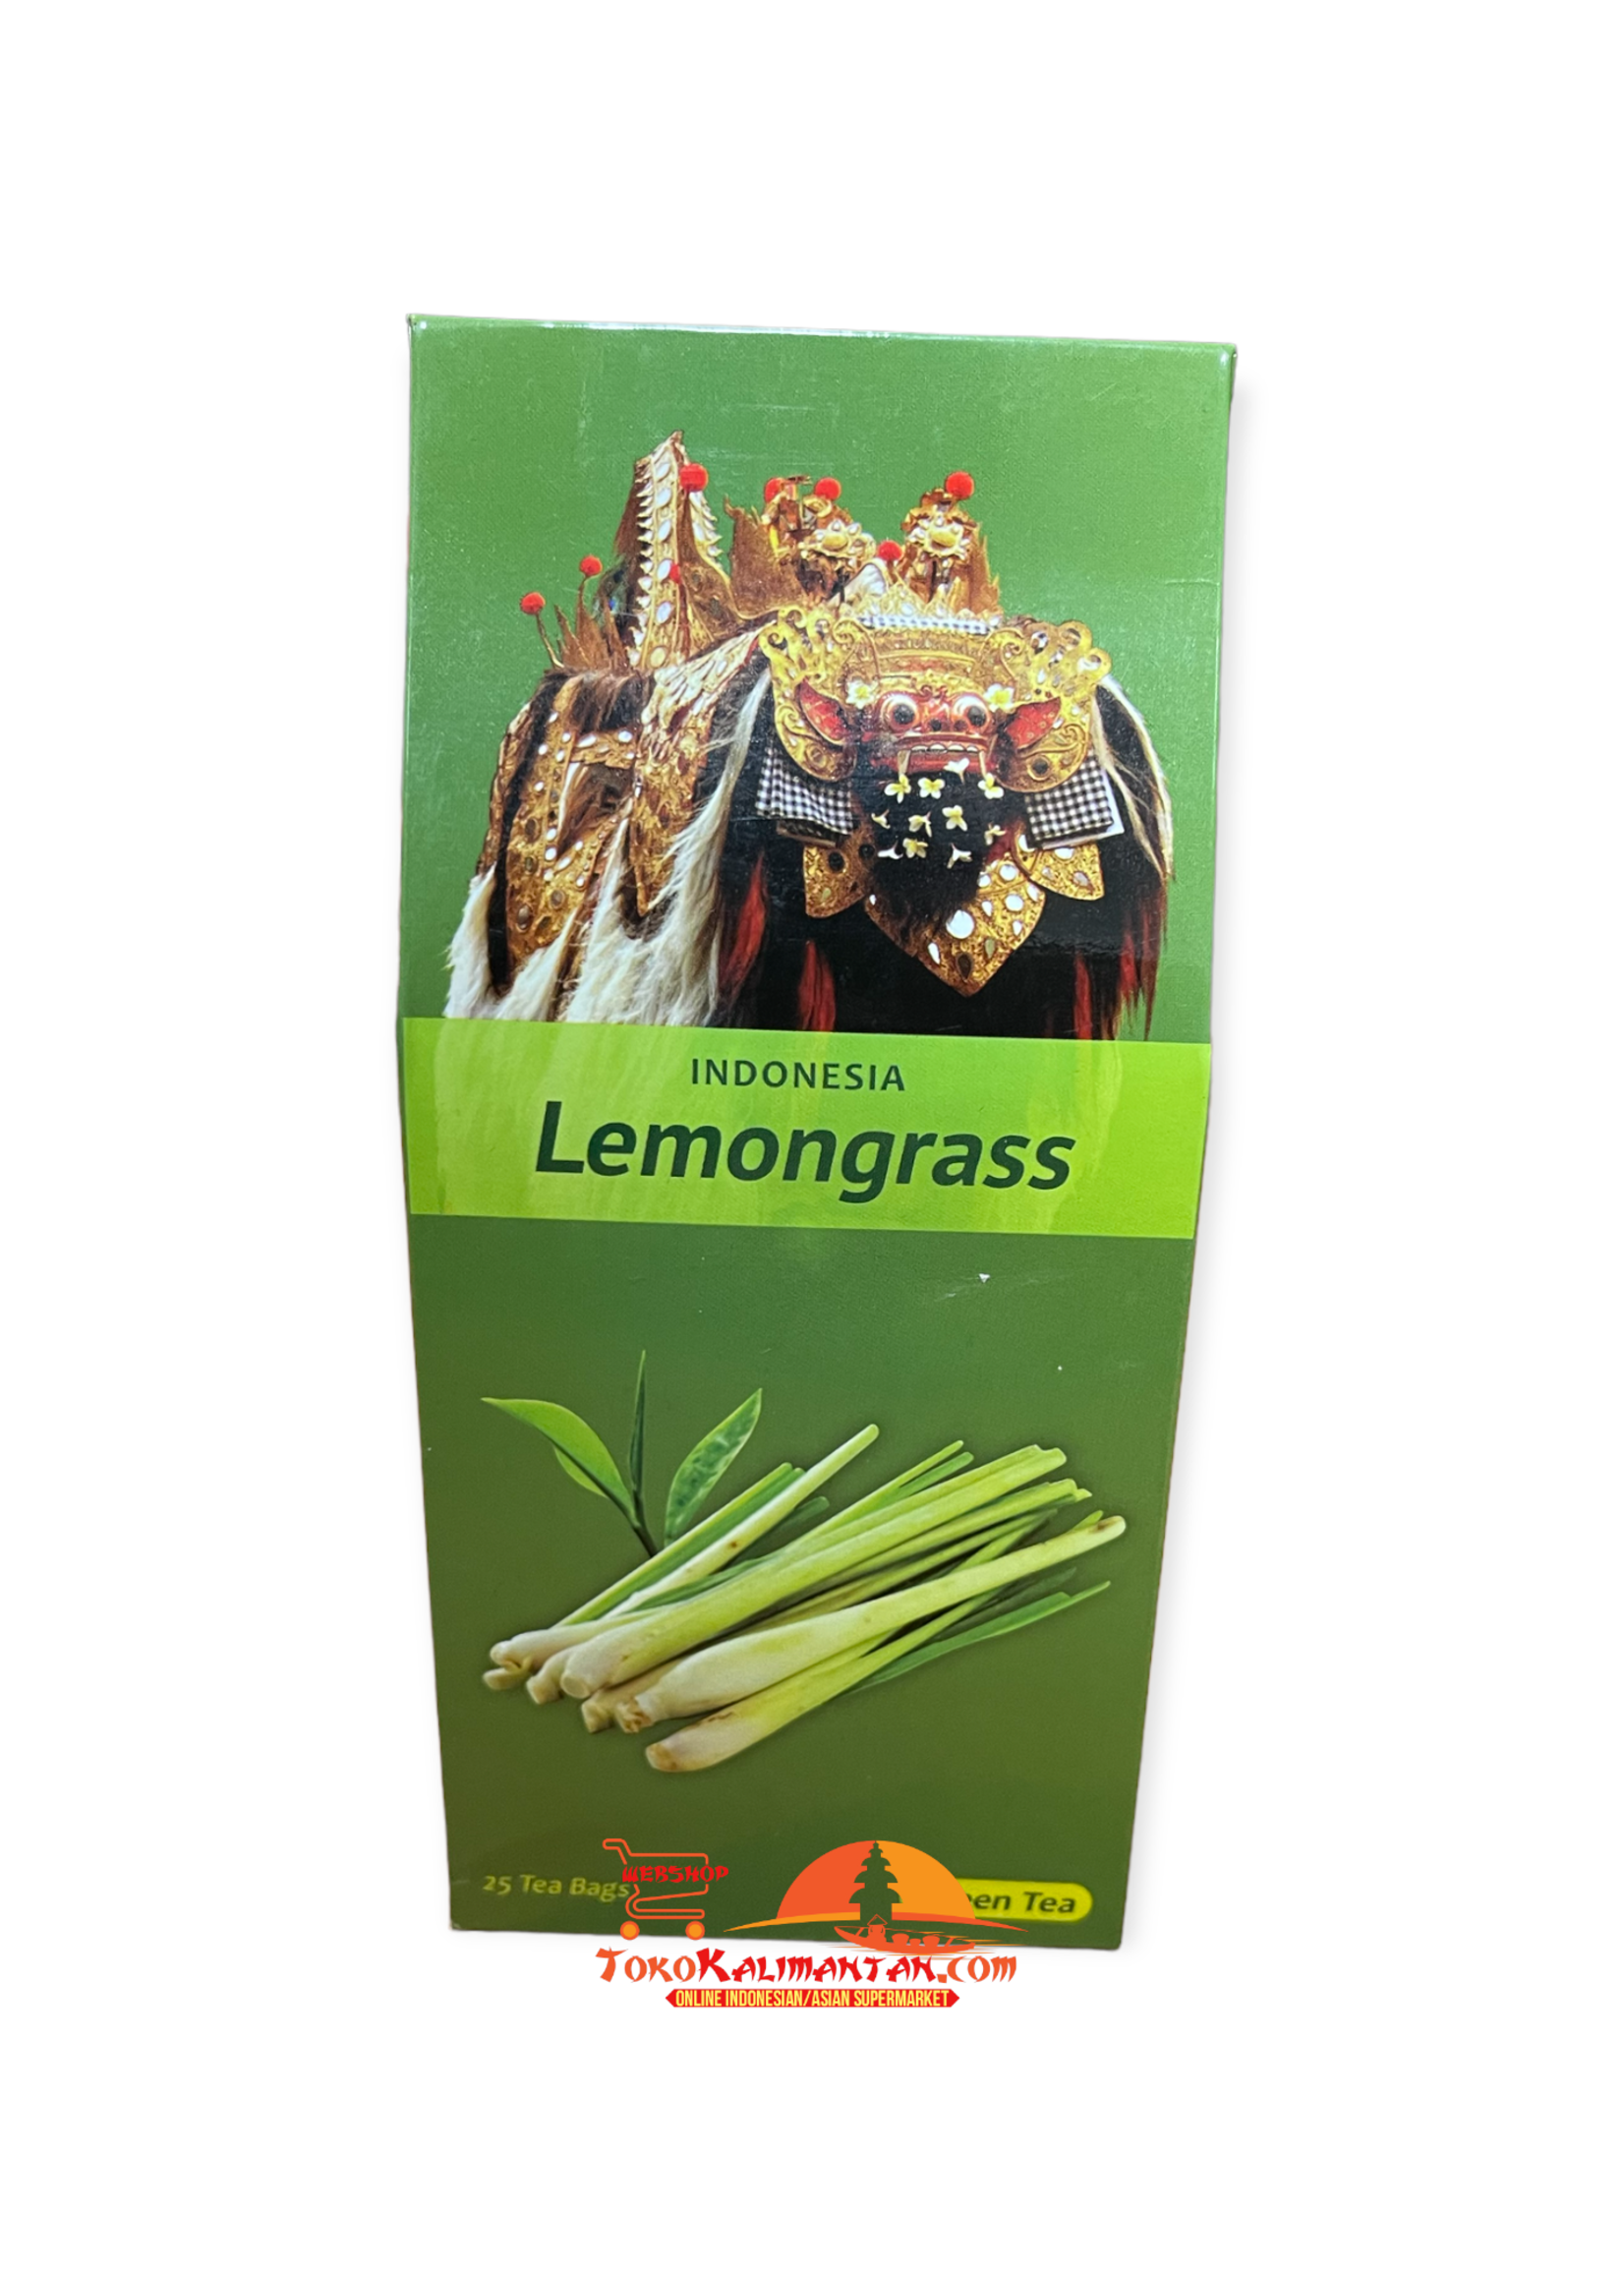 Barong Box Barong Box - Lemongrass 25 tea bags